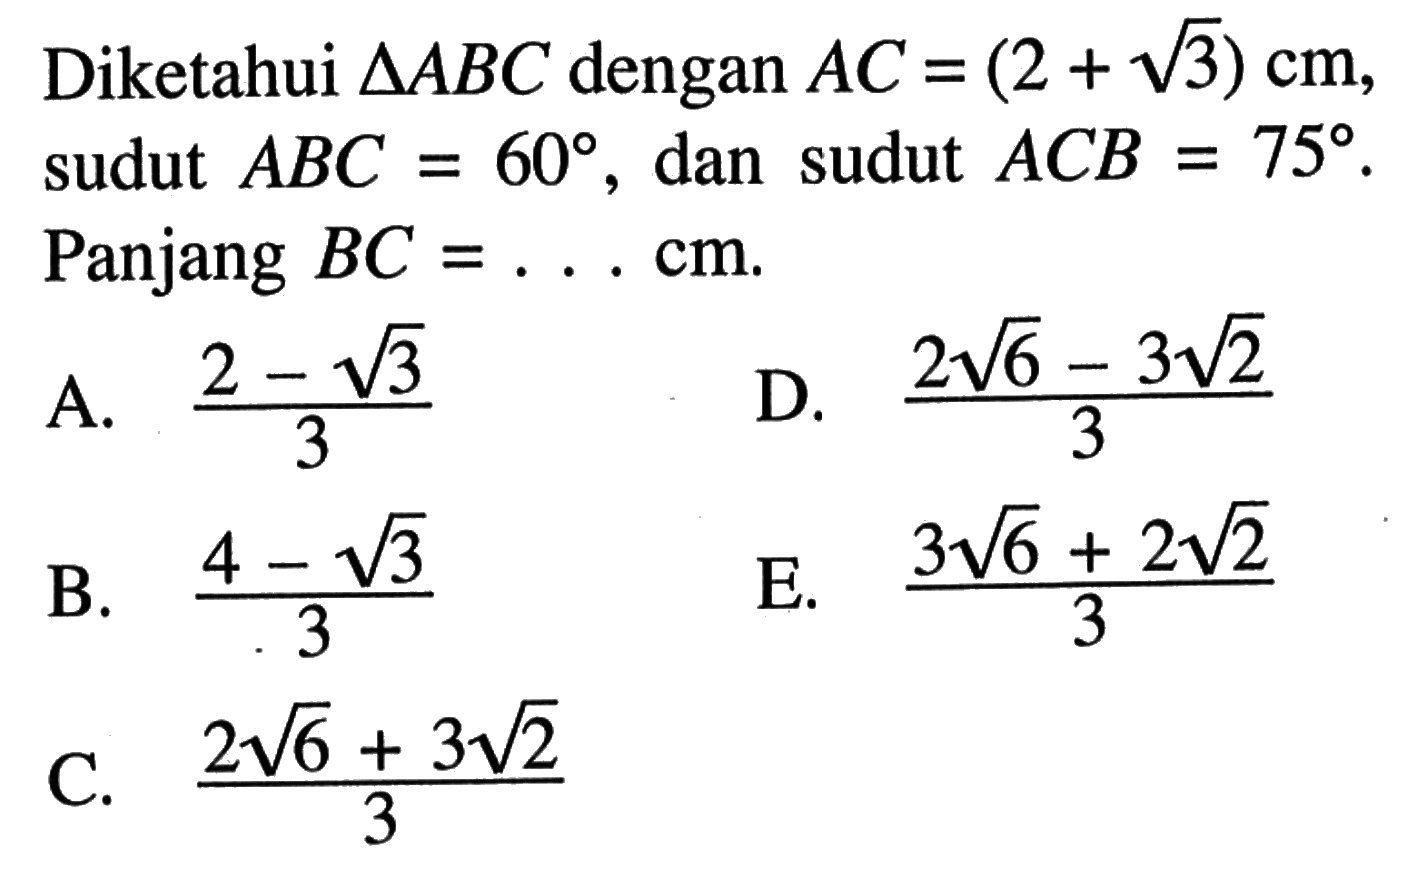 Diketahui segitiga ABC dengan AC= (2+akar(3)) cm  sudut ABC=60, dan sudut ACB=75. Panjang BC=...cm.
